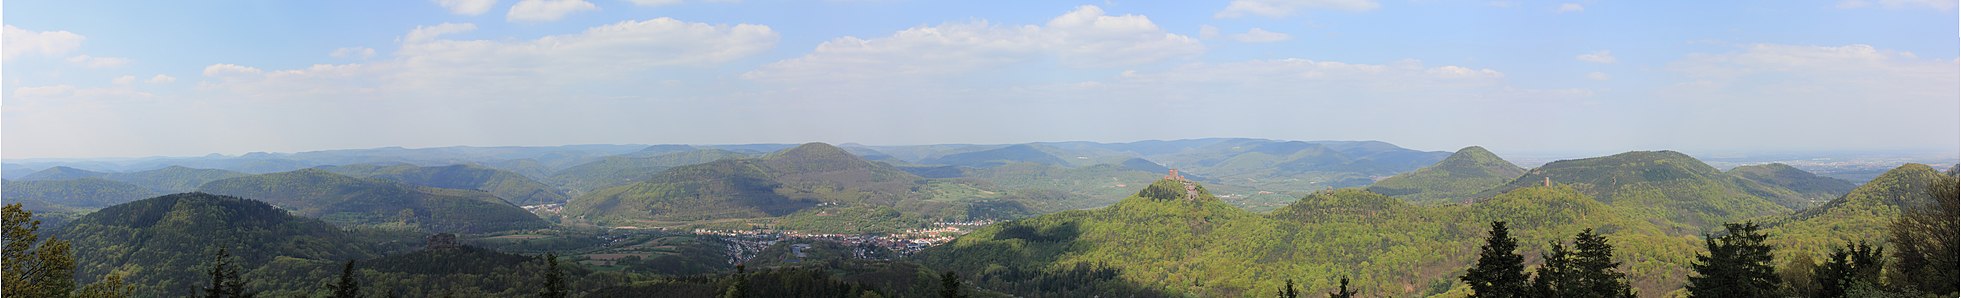 Panoramablick vom Rehbergturm auf den zentralen und östlichen Pfälzerwald, rechts von der Mitte vorn der Trifels